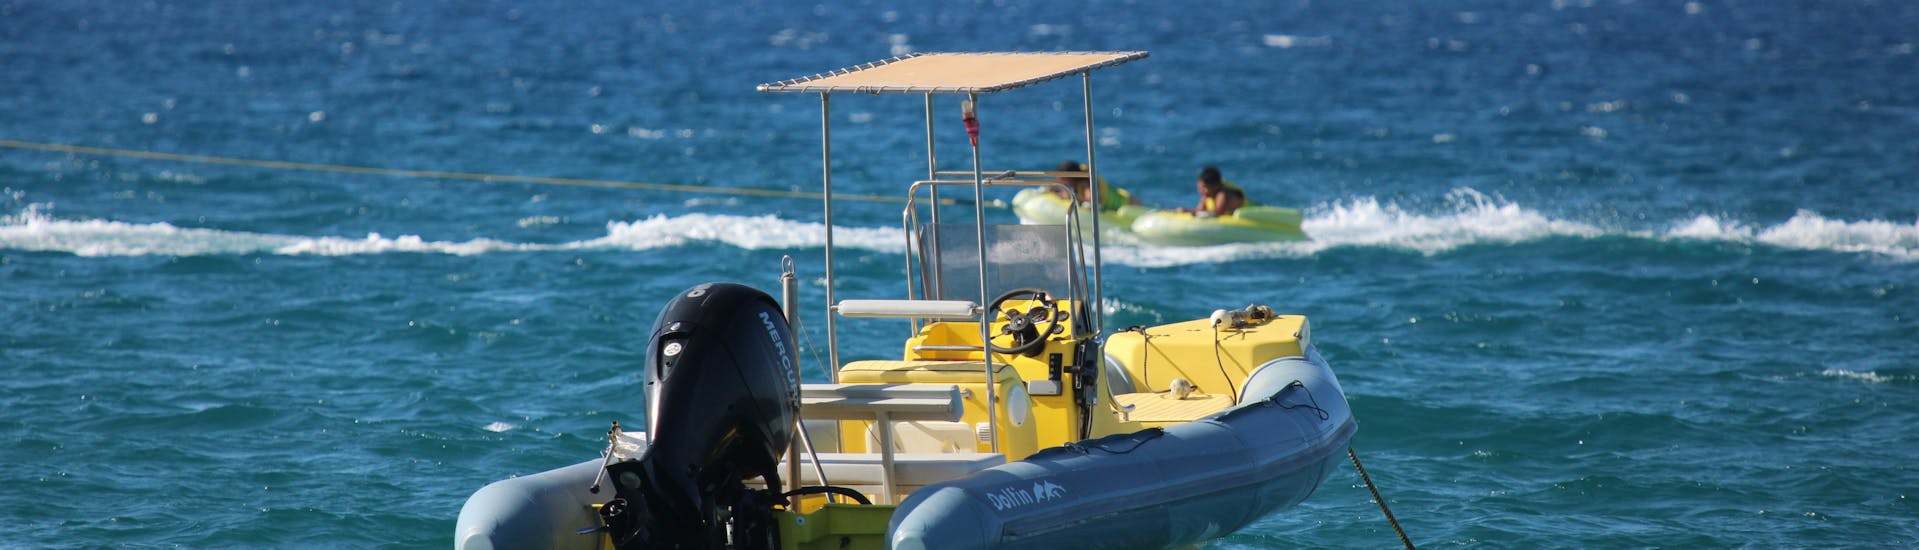 Paseo en barco privado a Playa Ammoudara  & baño en el mar.